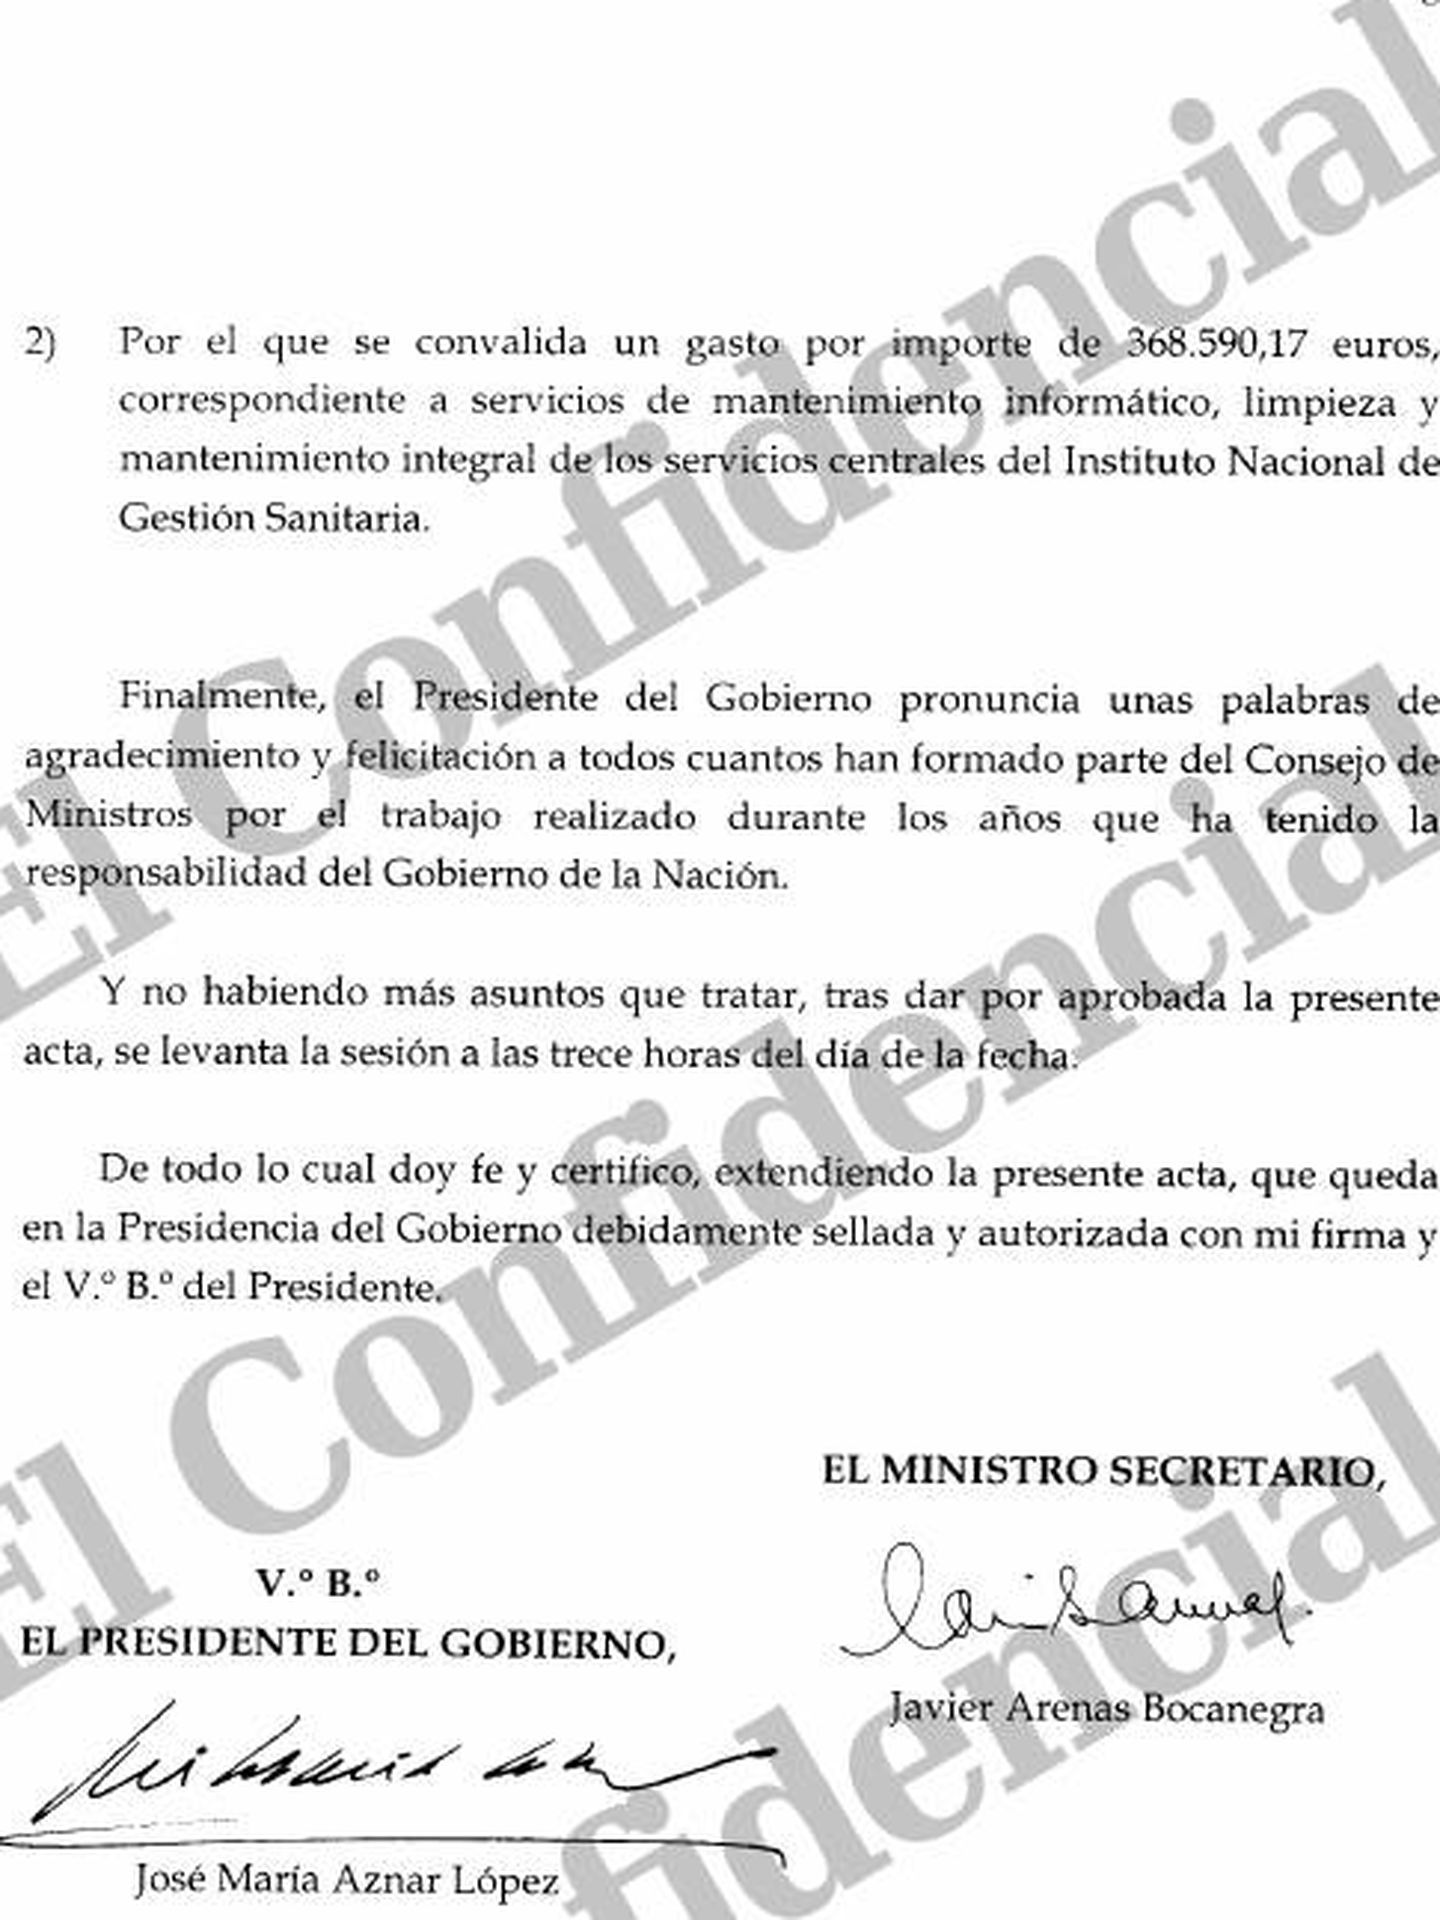 Pinche en la imagen para leer el acta completa del último Consejo de Ministros presidido por Aznar.